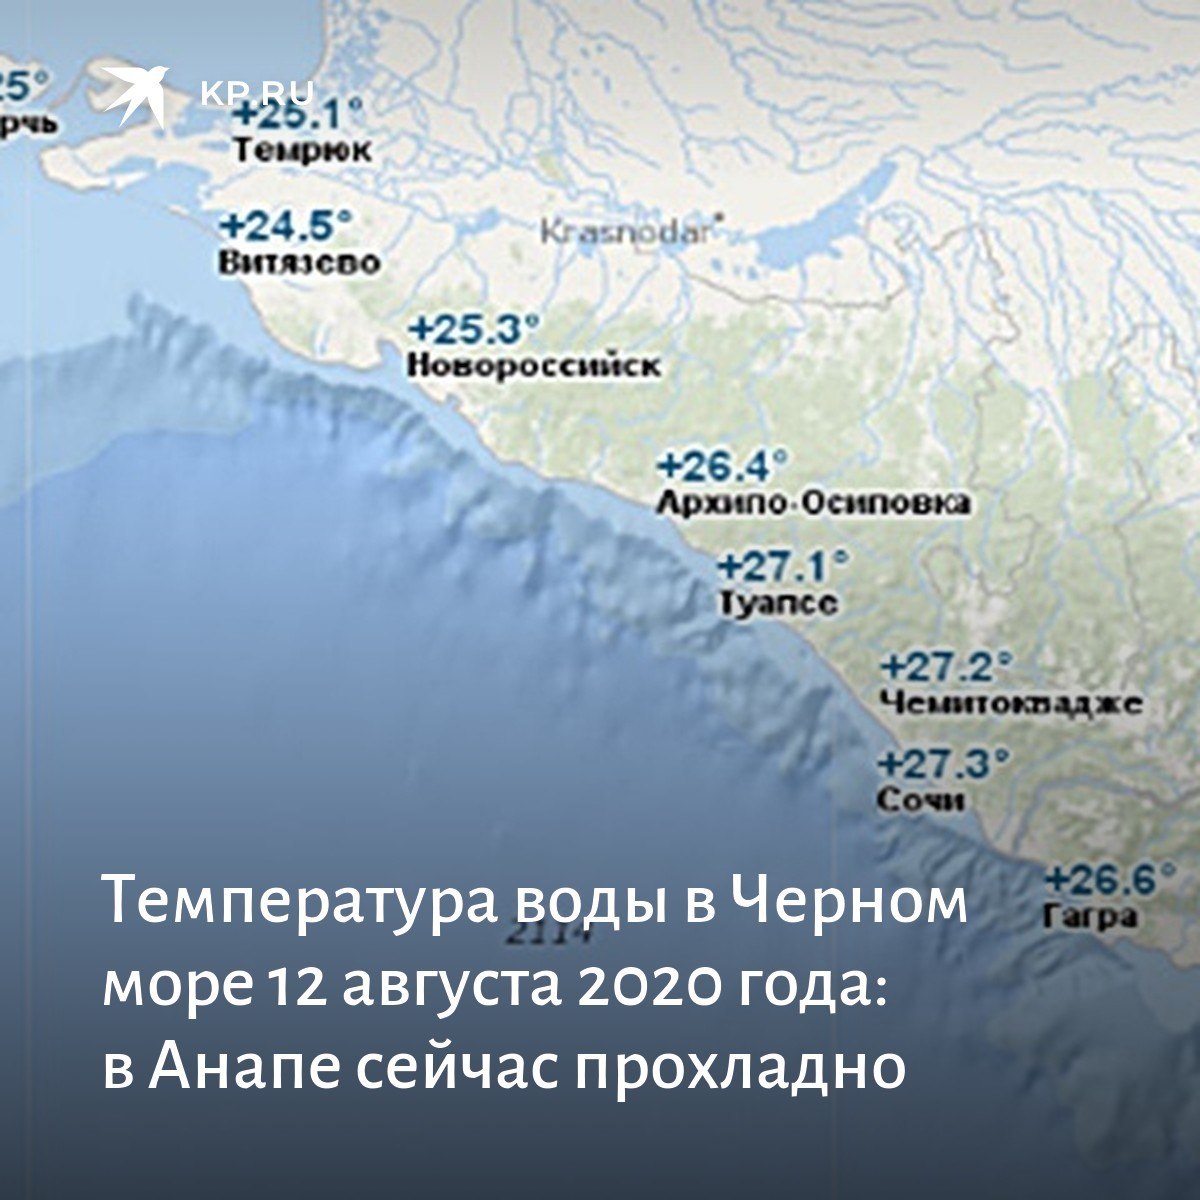 Какая температура в краснодарском крае. Черное море Сочи. Температурная карта Черноморского побережья. Туапсе побережье черного моря. Глубина моря в районе Сочи.